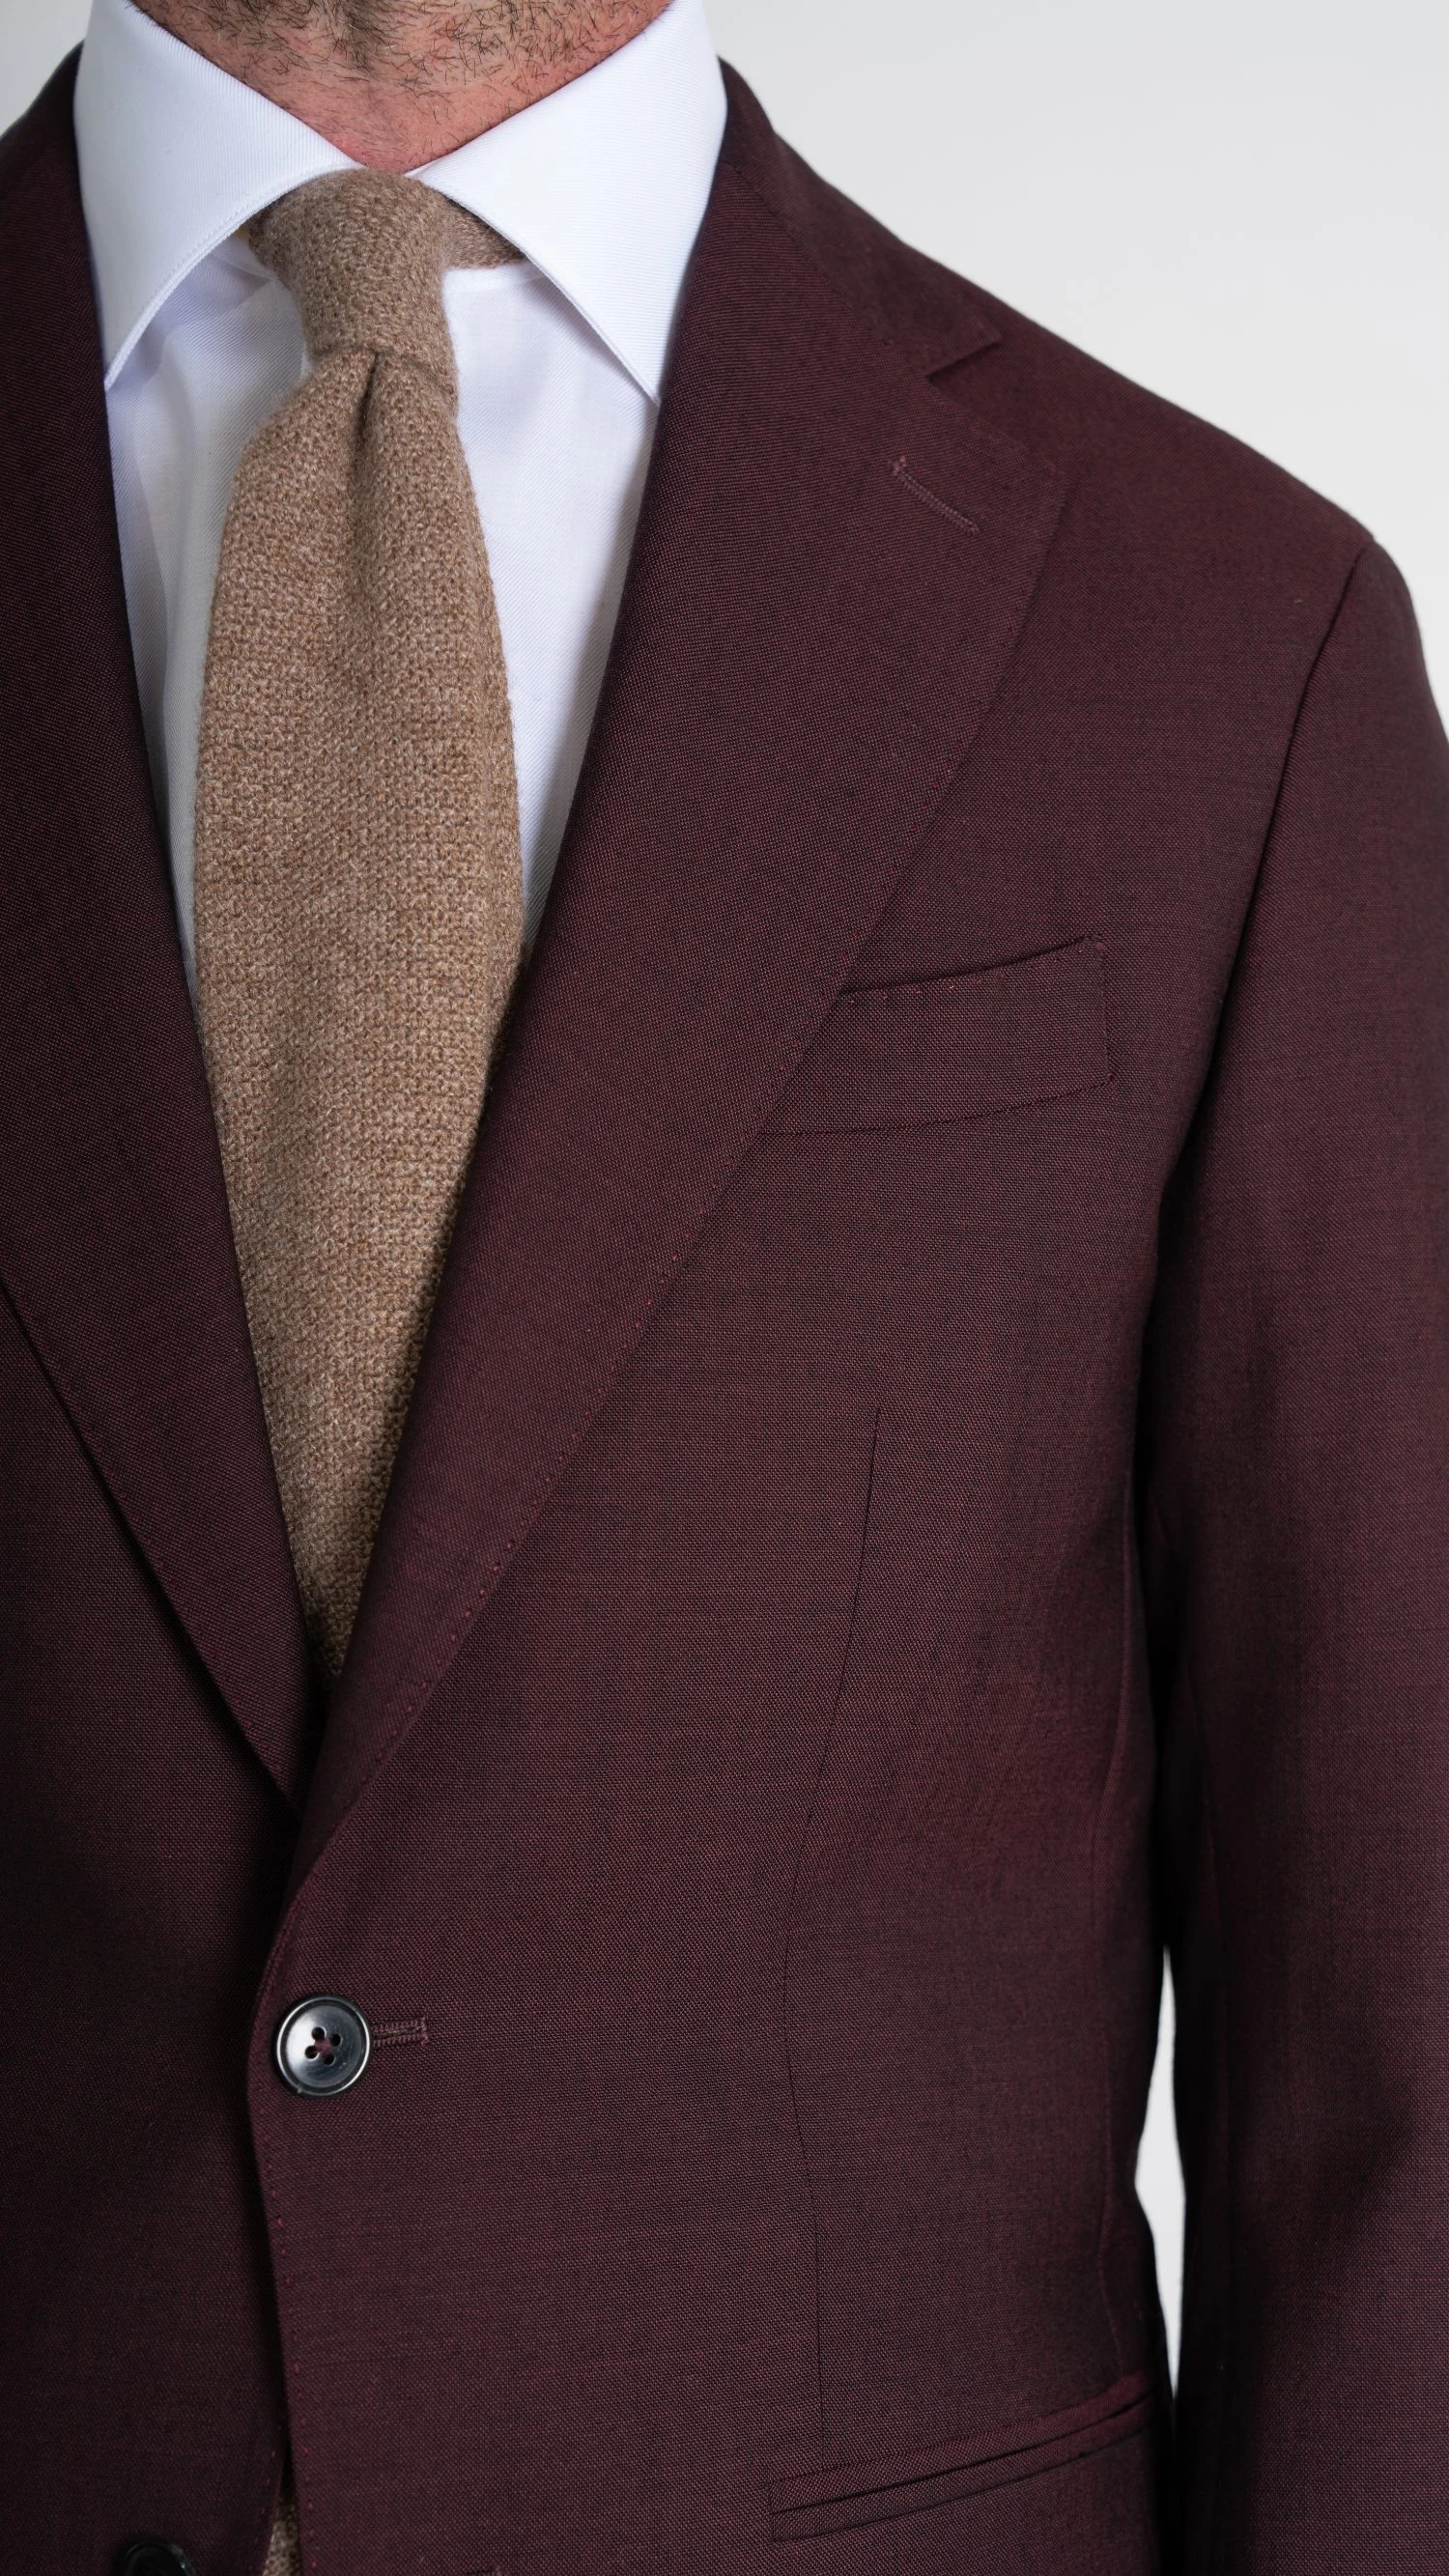 custom burgundy twistair suit by mond